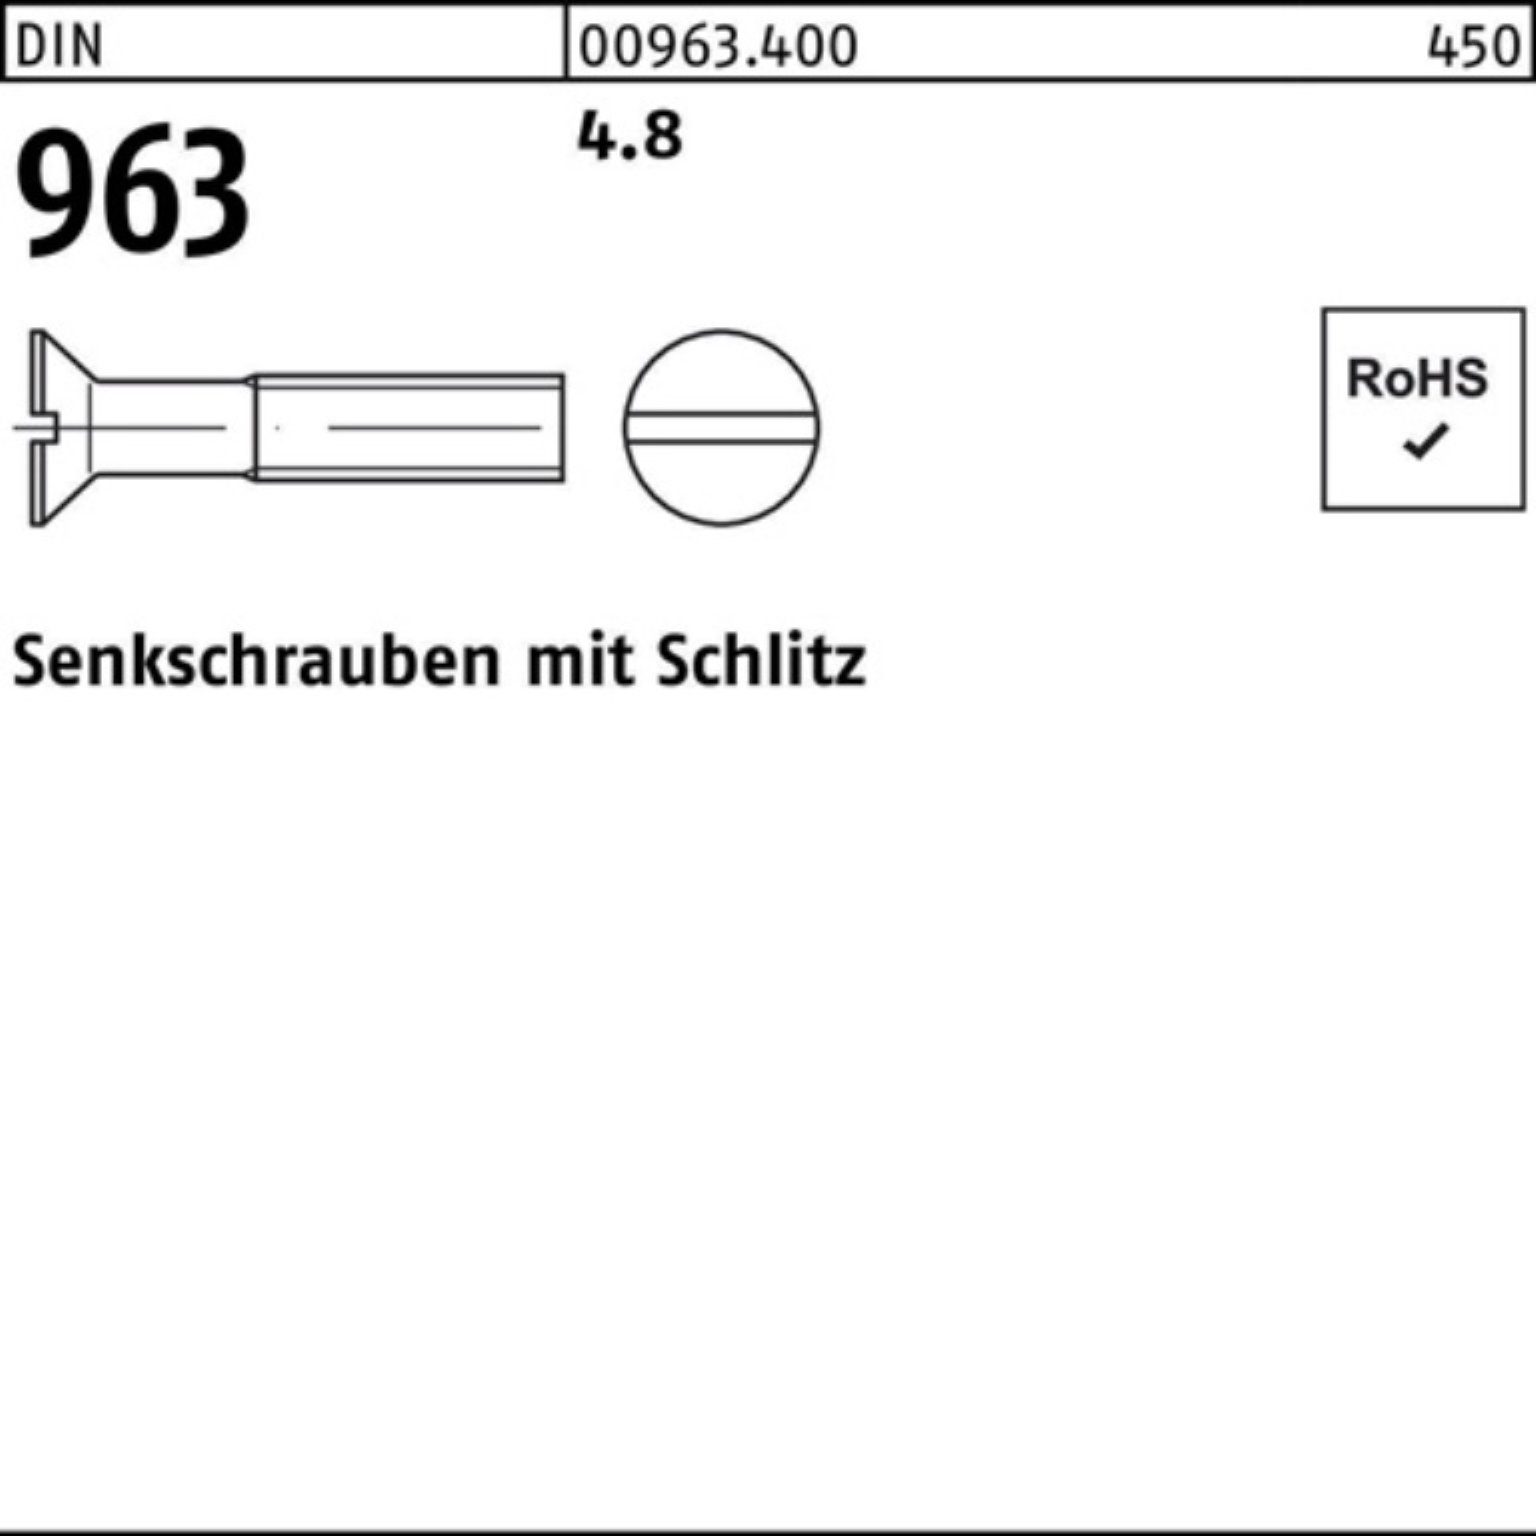 Reyher 8 DIN Stück 2000 4.8 DIN Senkschraube M5x Senkschraube Pack 963 2000er Schlitz 963